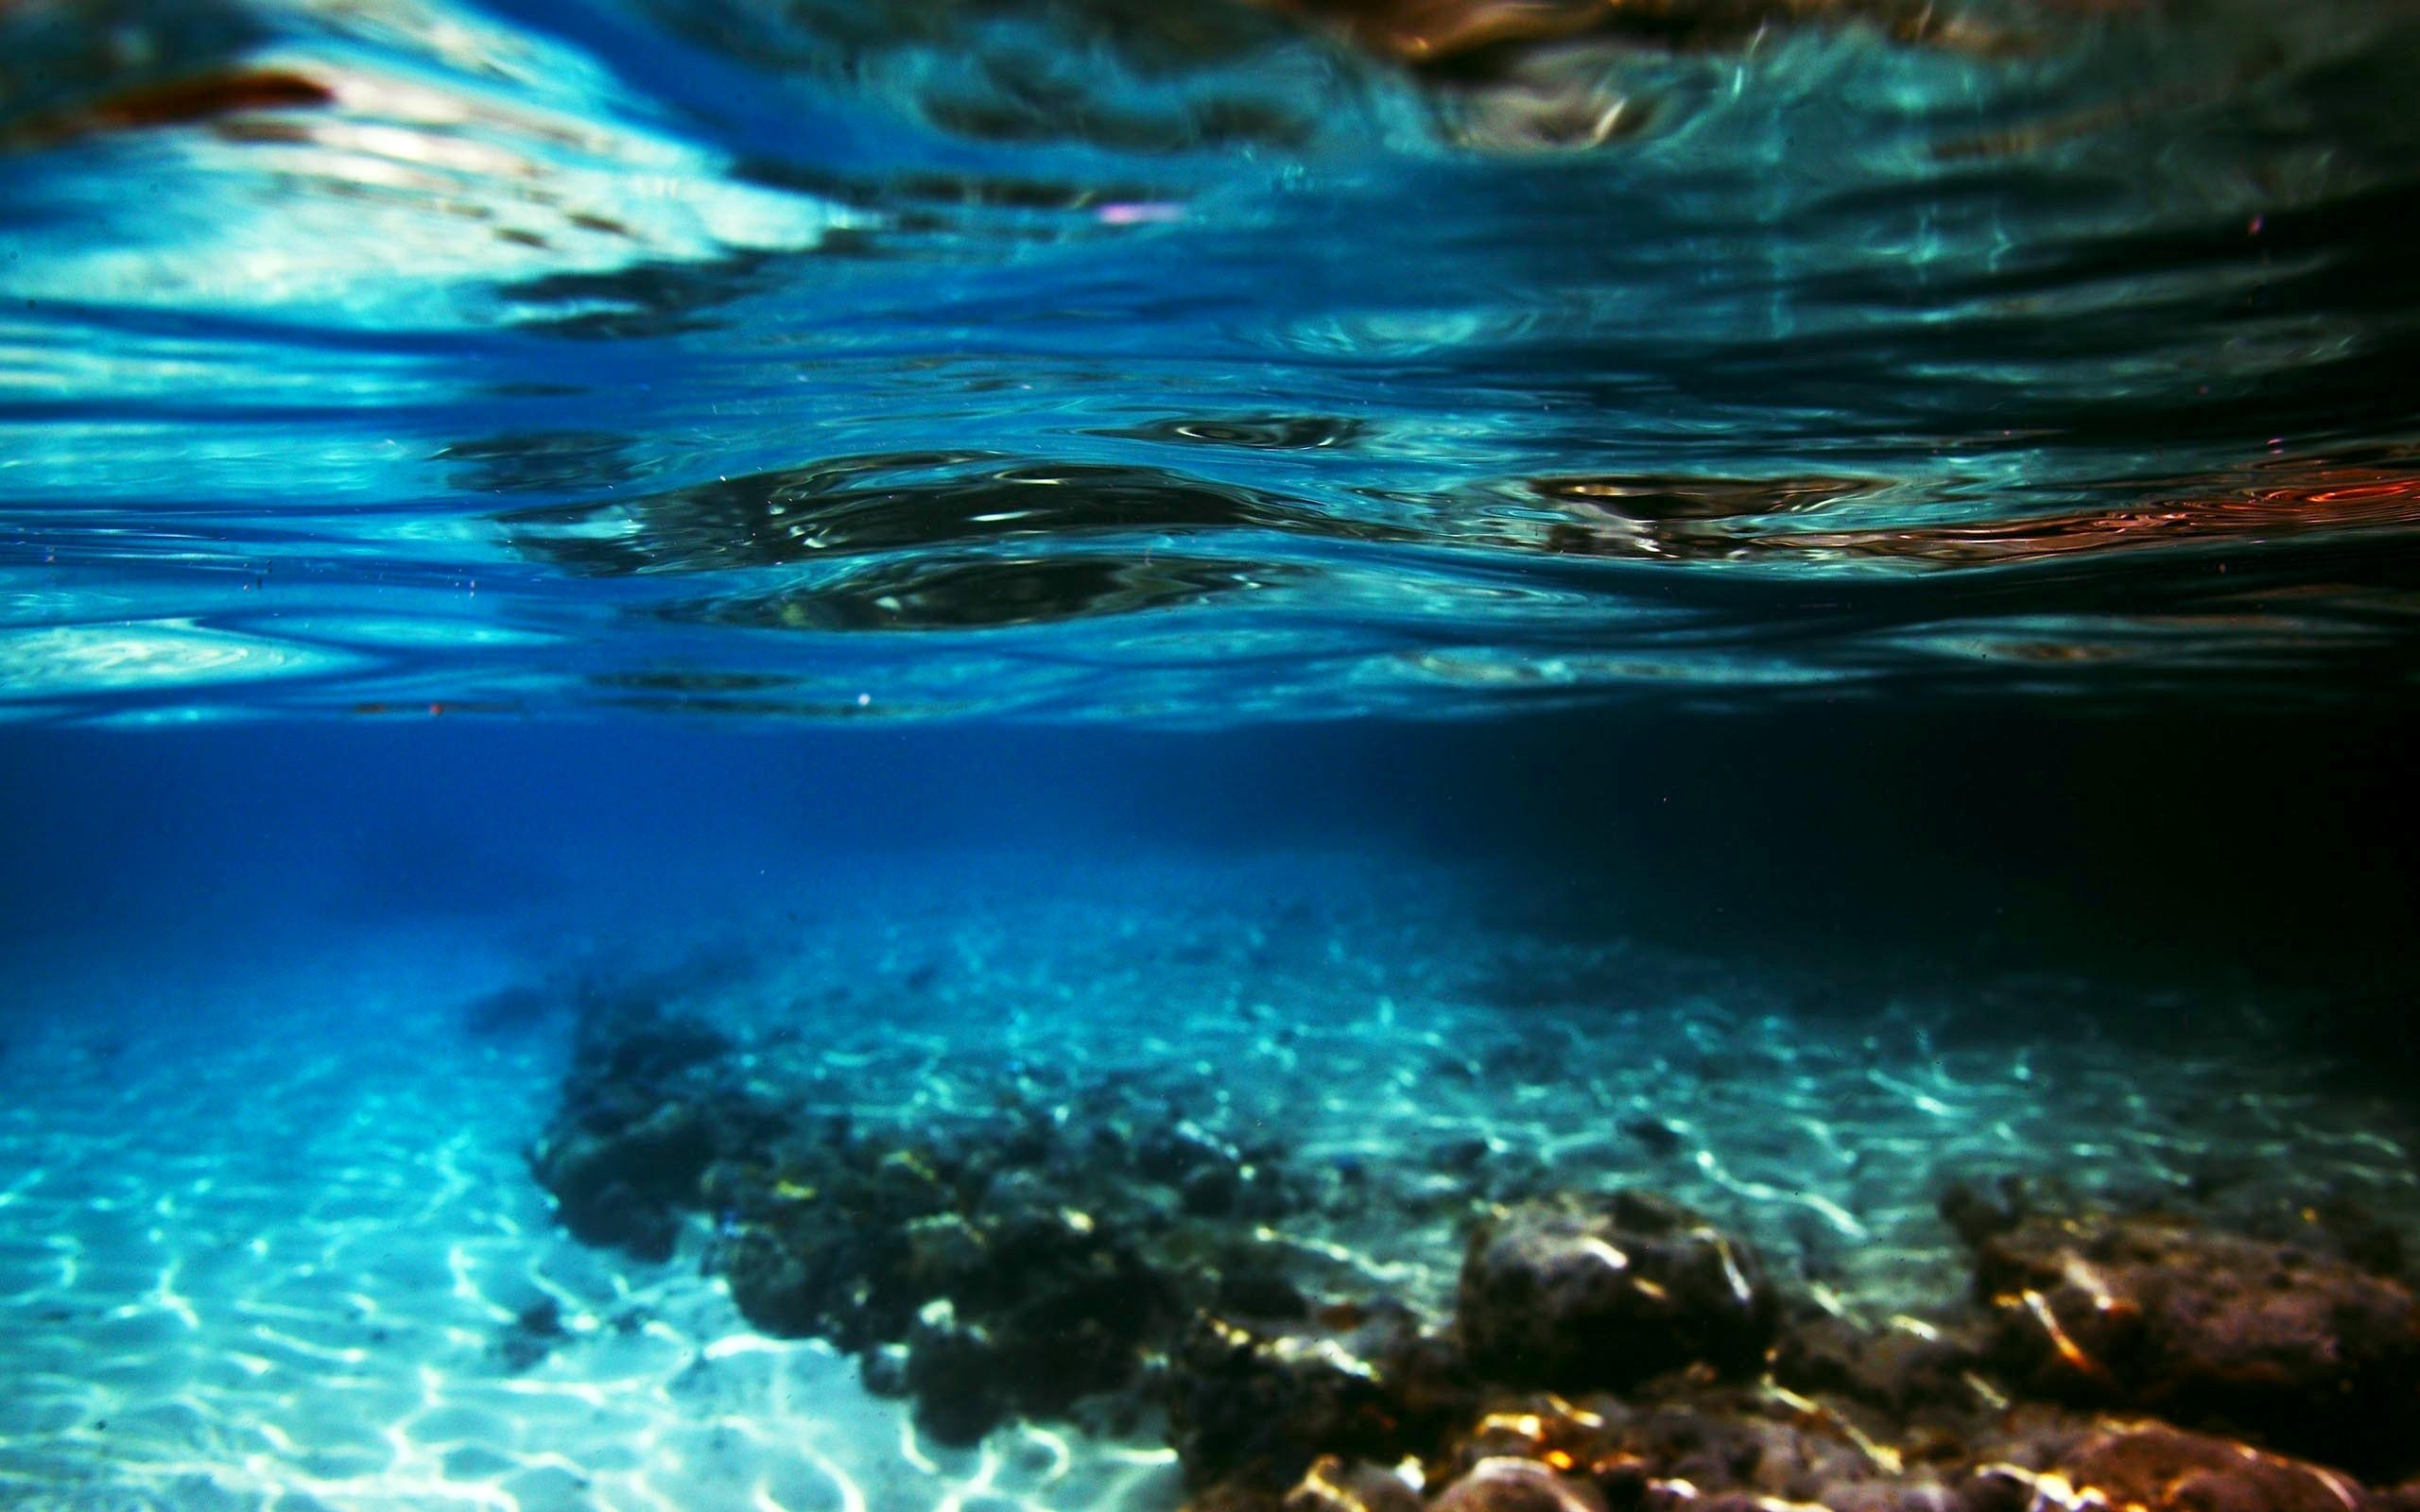 Cùng tìm hiểu về hình nền dưới nước đẹp mắt. Hình ảnh liên quan sẽ khiến bạn say đắm trong không gian đầy màu sắc của đại dương, cùng với những loài sinh vật đa dạng.